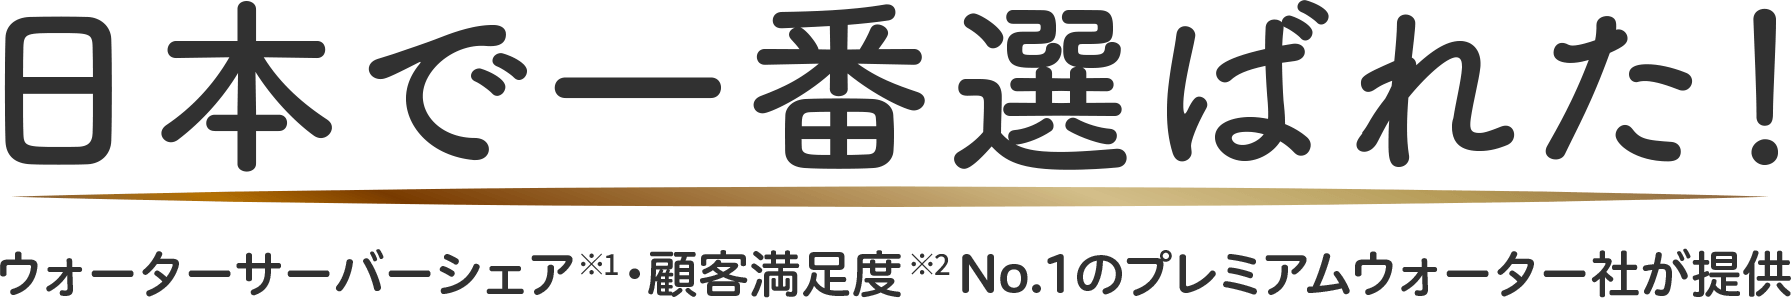 日本で一番選ばれた！ウォーターサーバーシェア・顧客満足度No.1のプレミアムウォーター社が提供